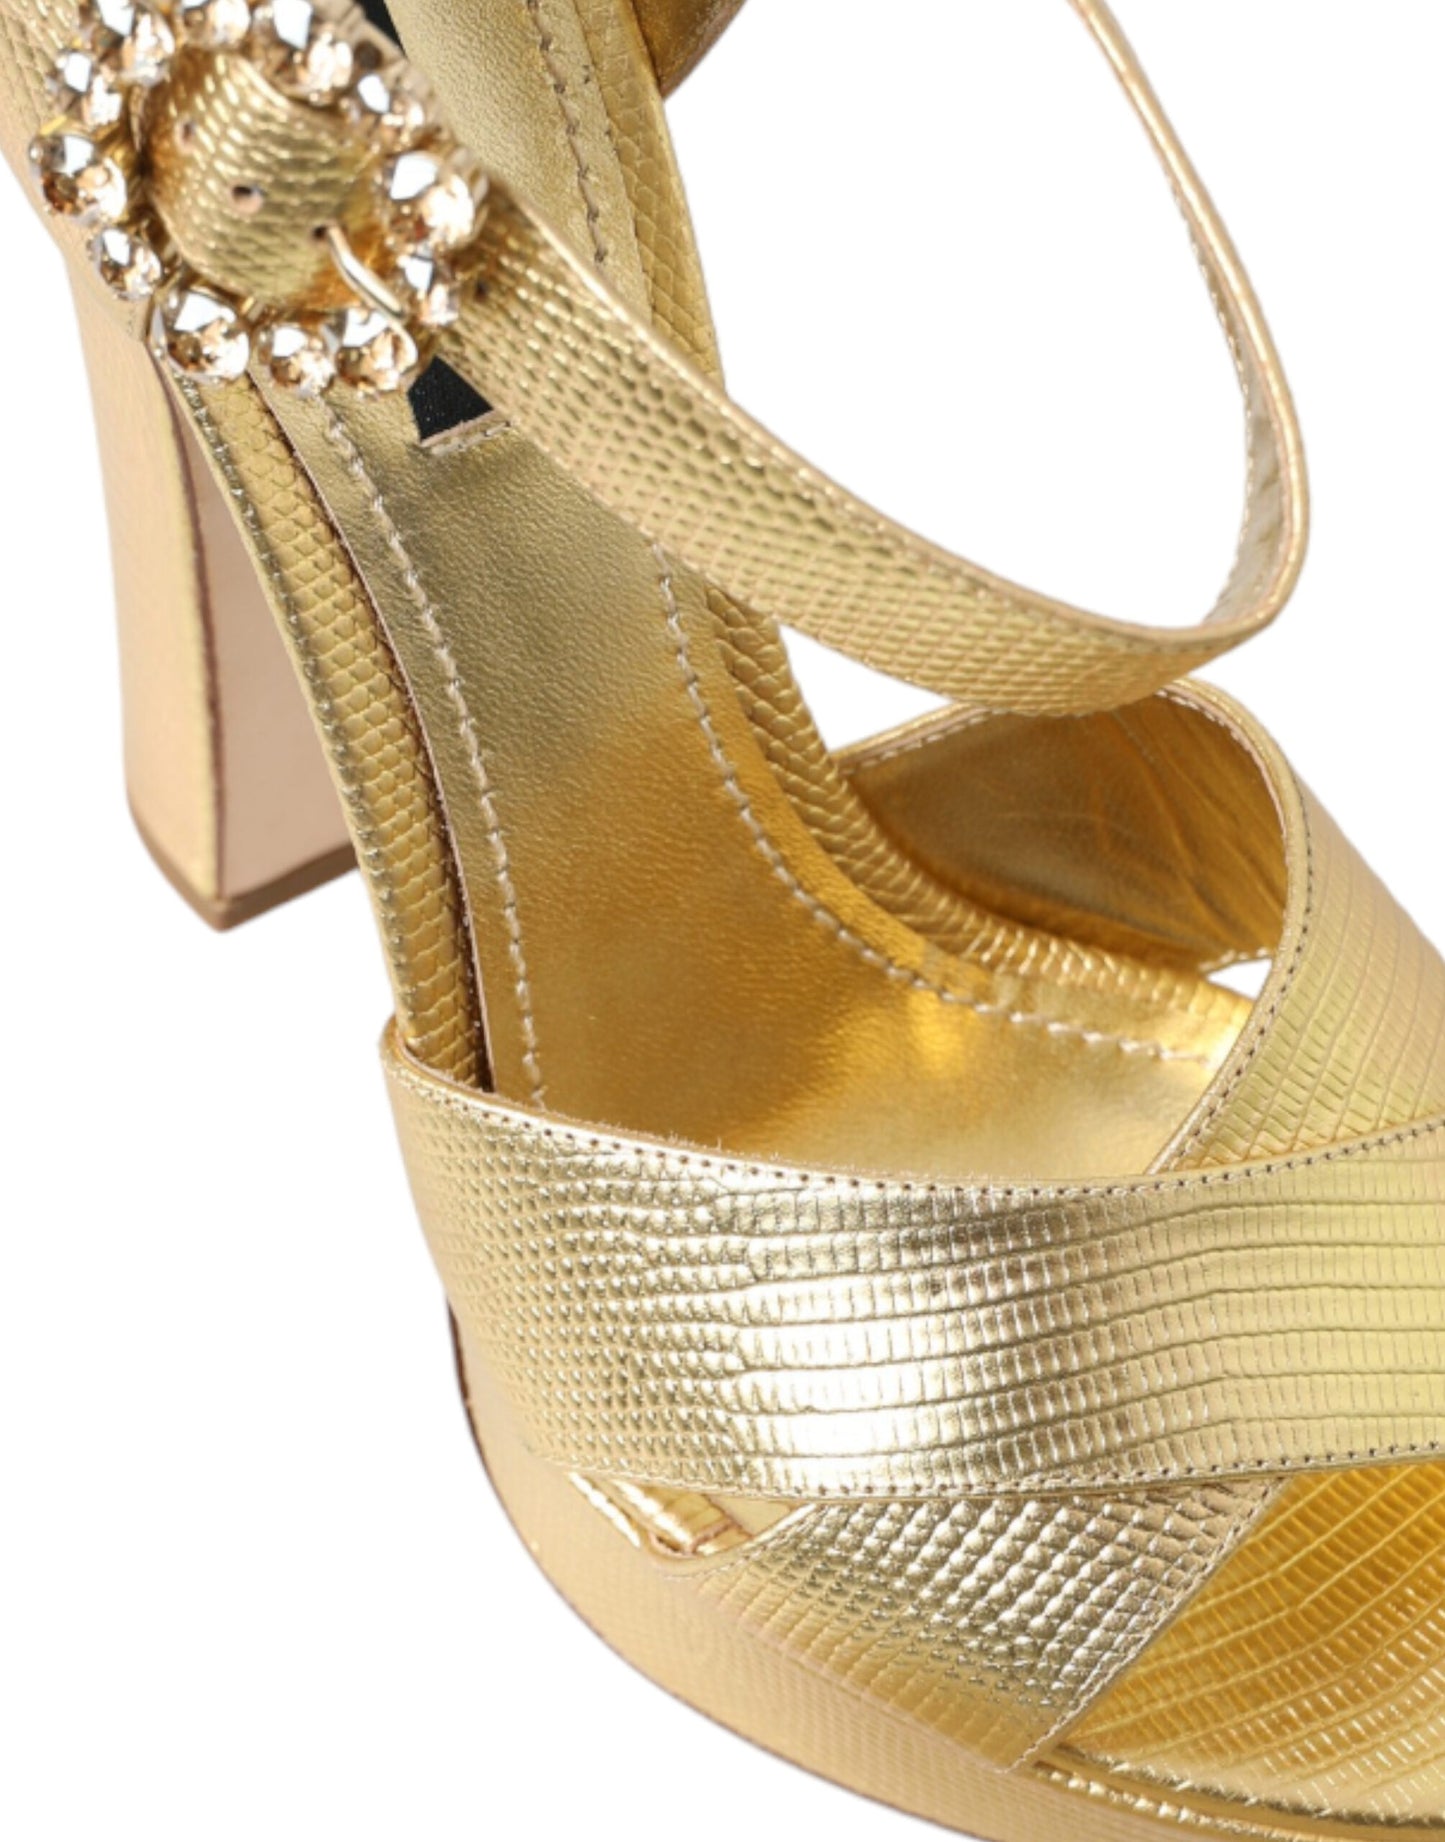 Gold Leather Crystal-Embellished Sandals